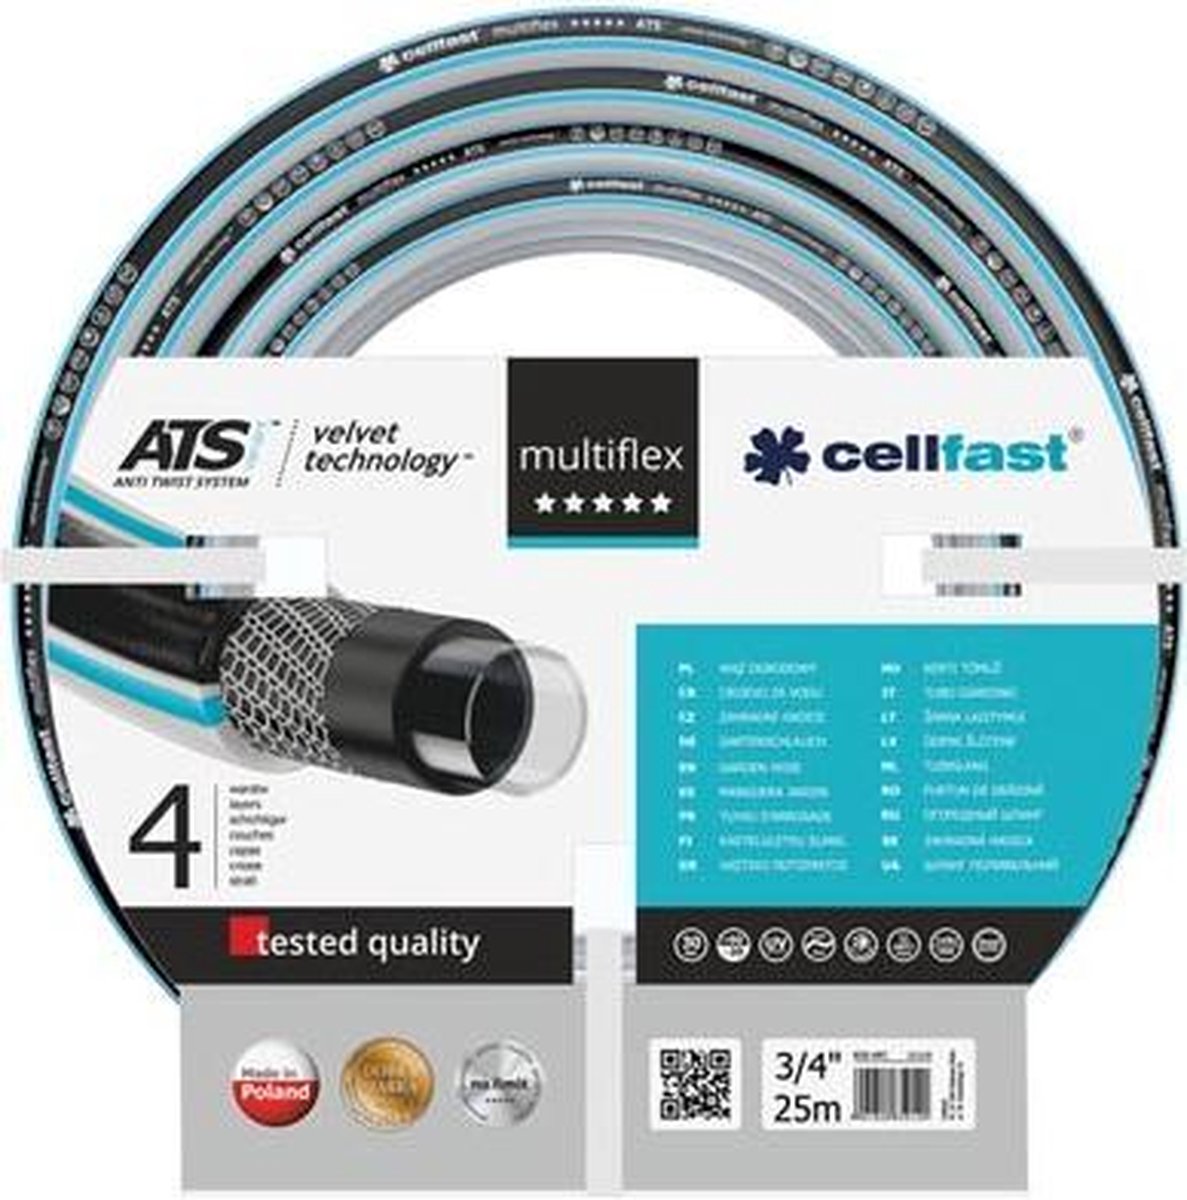 Cellfast - Tuinslang - Multiflex Ats Variant™ Vt - 3/4